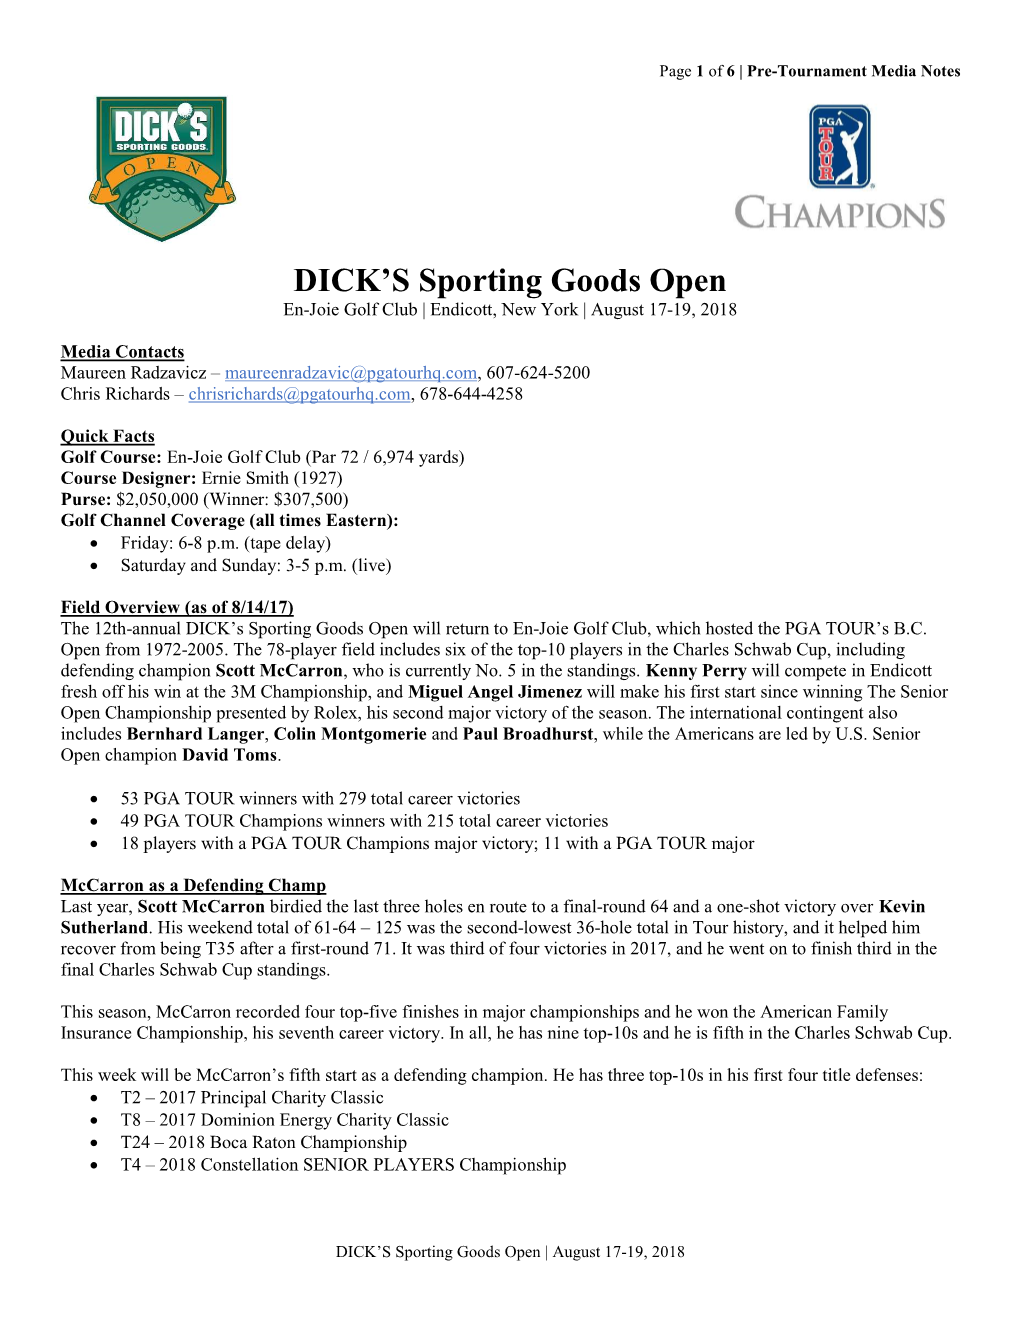 DICK's Sporting Goods Open 19